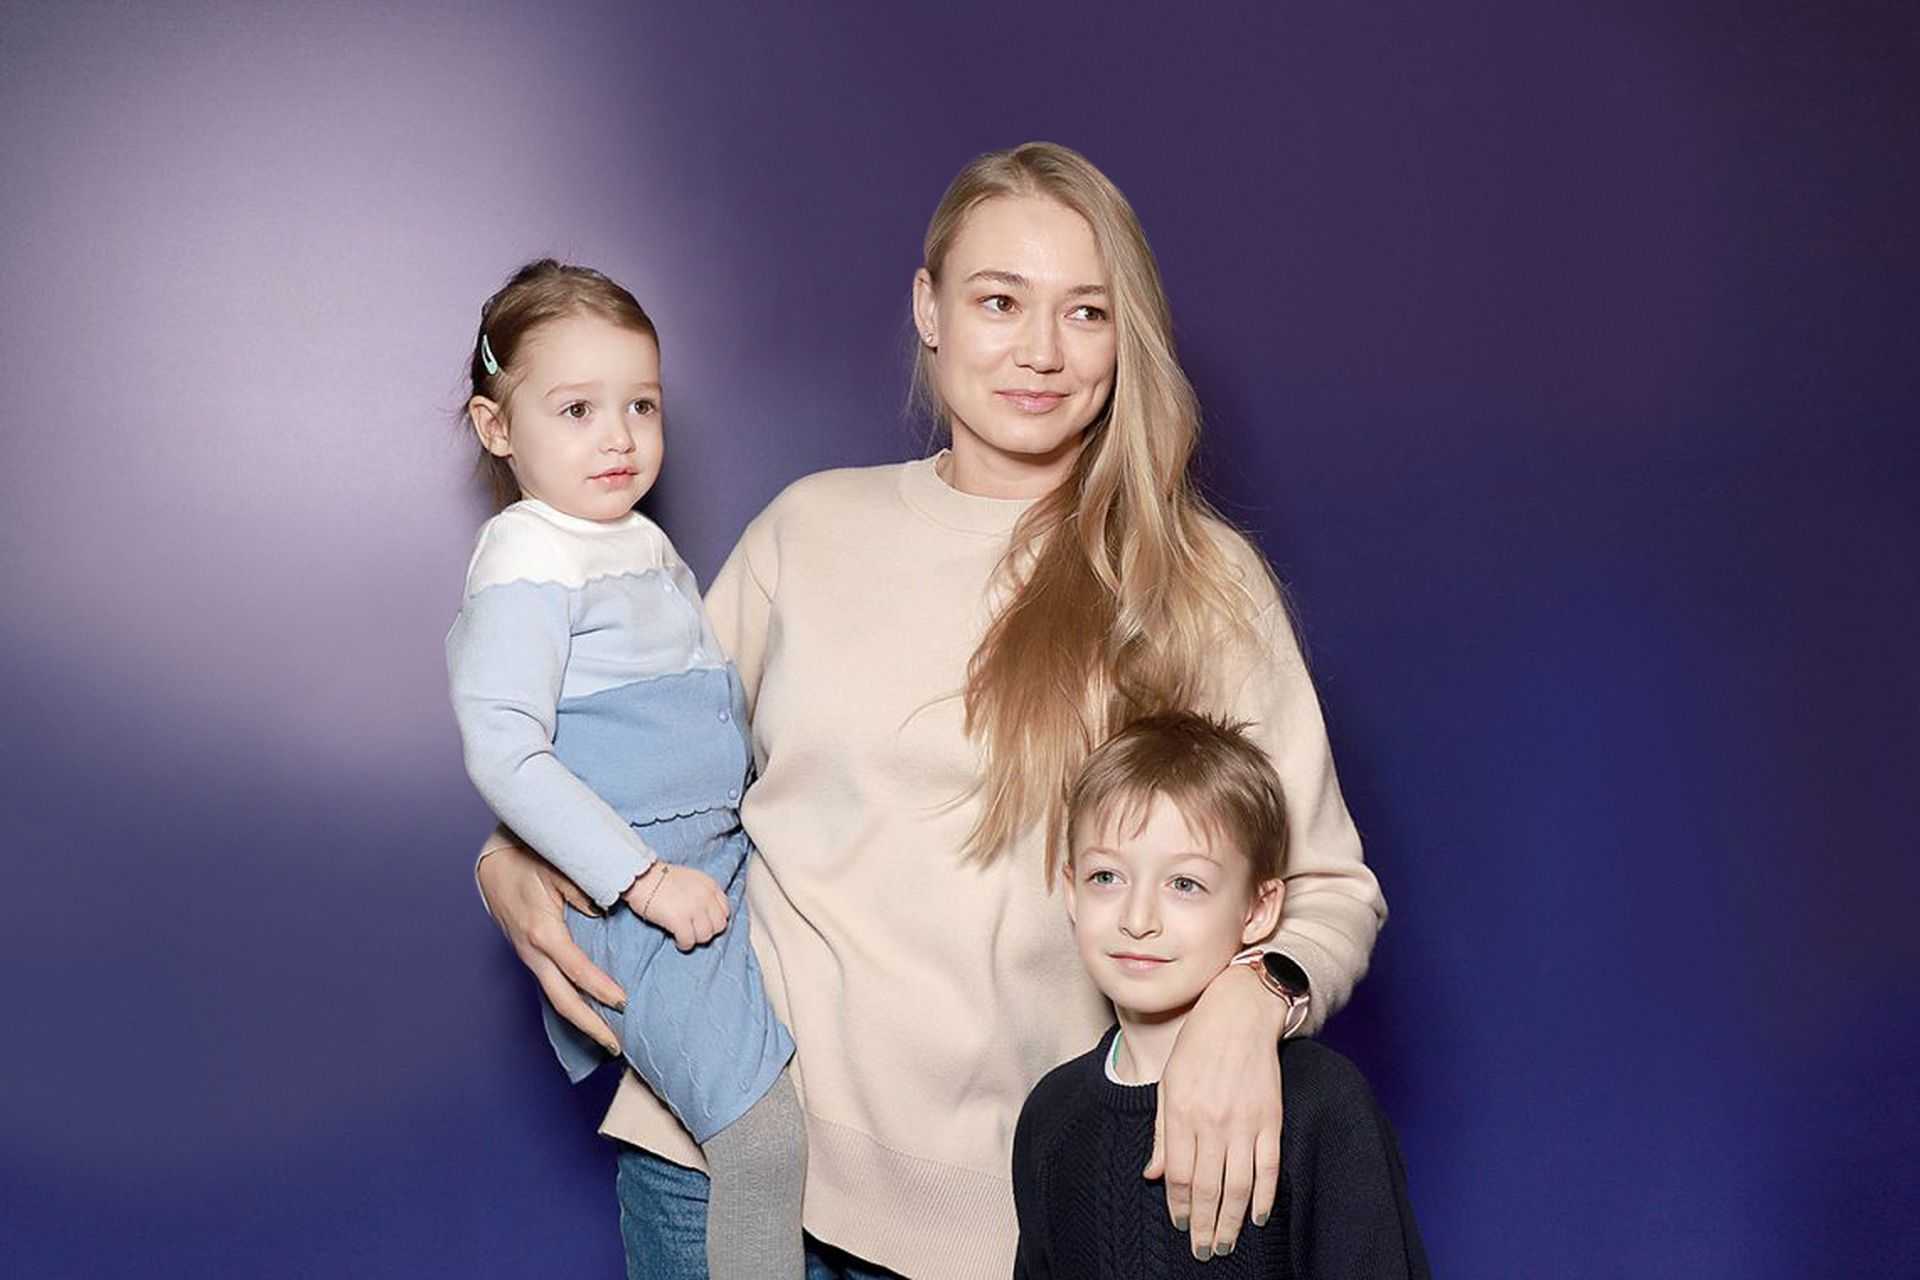 Оксана акиньшина рассказала, почему она не живет со старшим сыном | блогер elena_dokuchaewa на сайте spletnik.ru 13 июня 2021